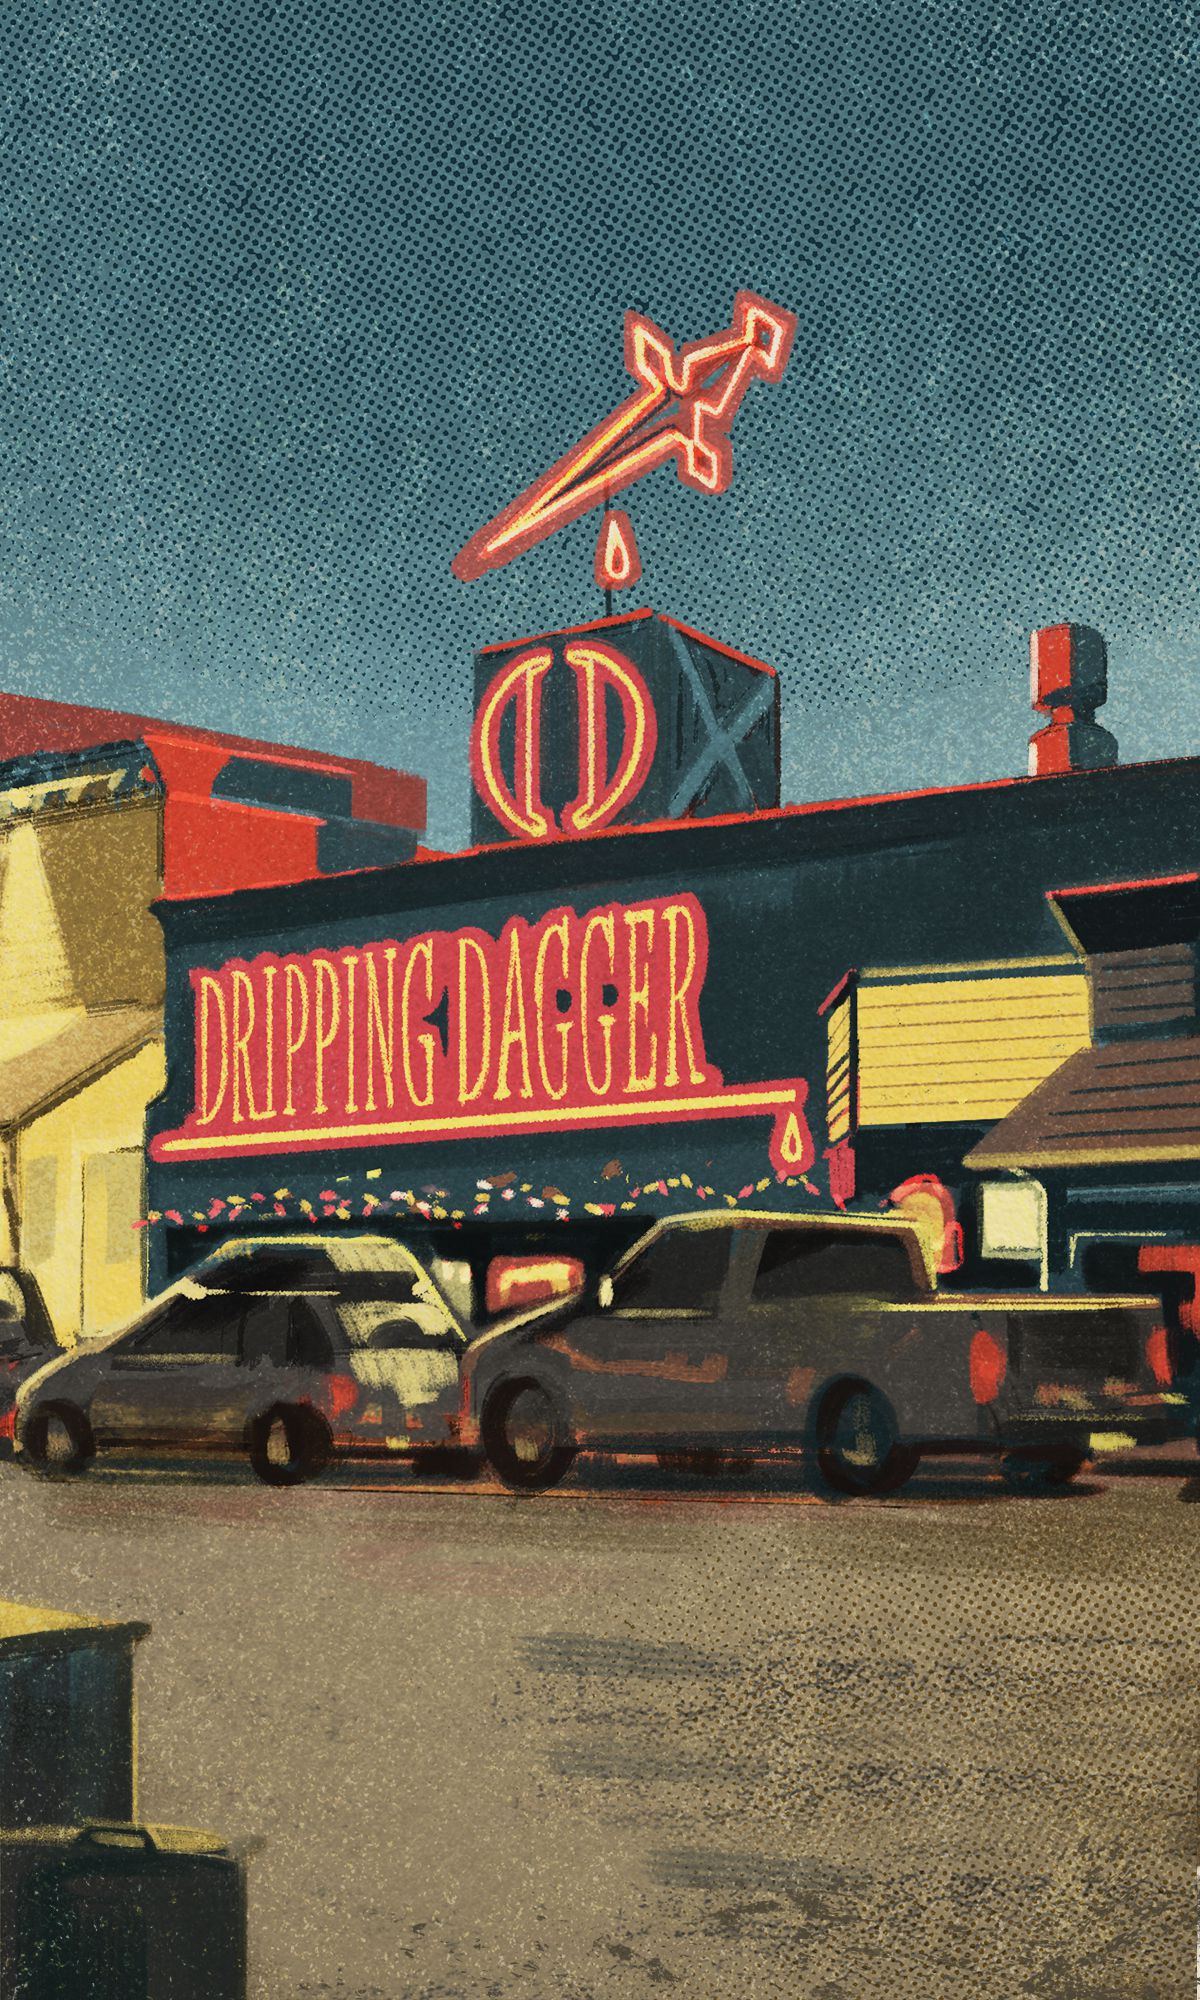 Un club in una tipica strada di una piccola città.  Si chiama Dripping Dagger e un pugnale al neon gocciola sangue sul tetto.